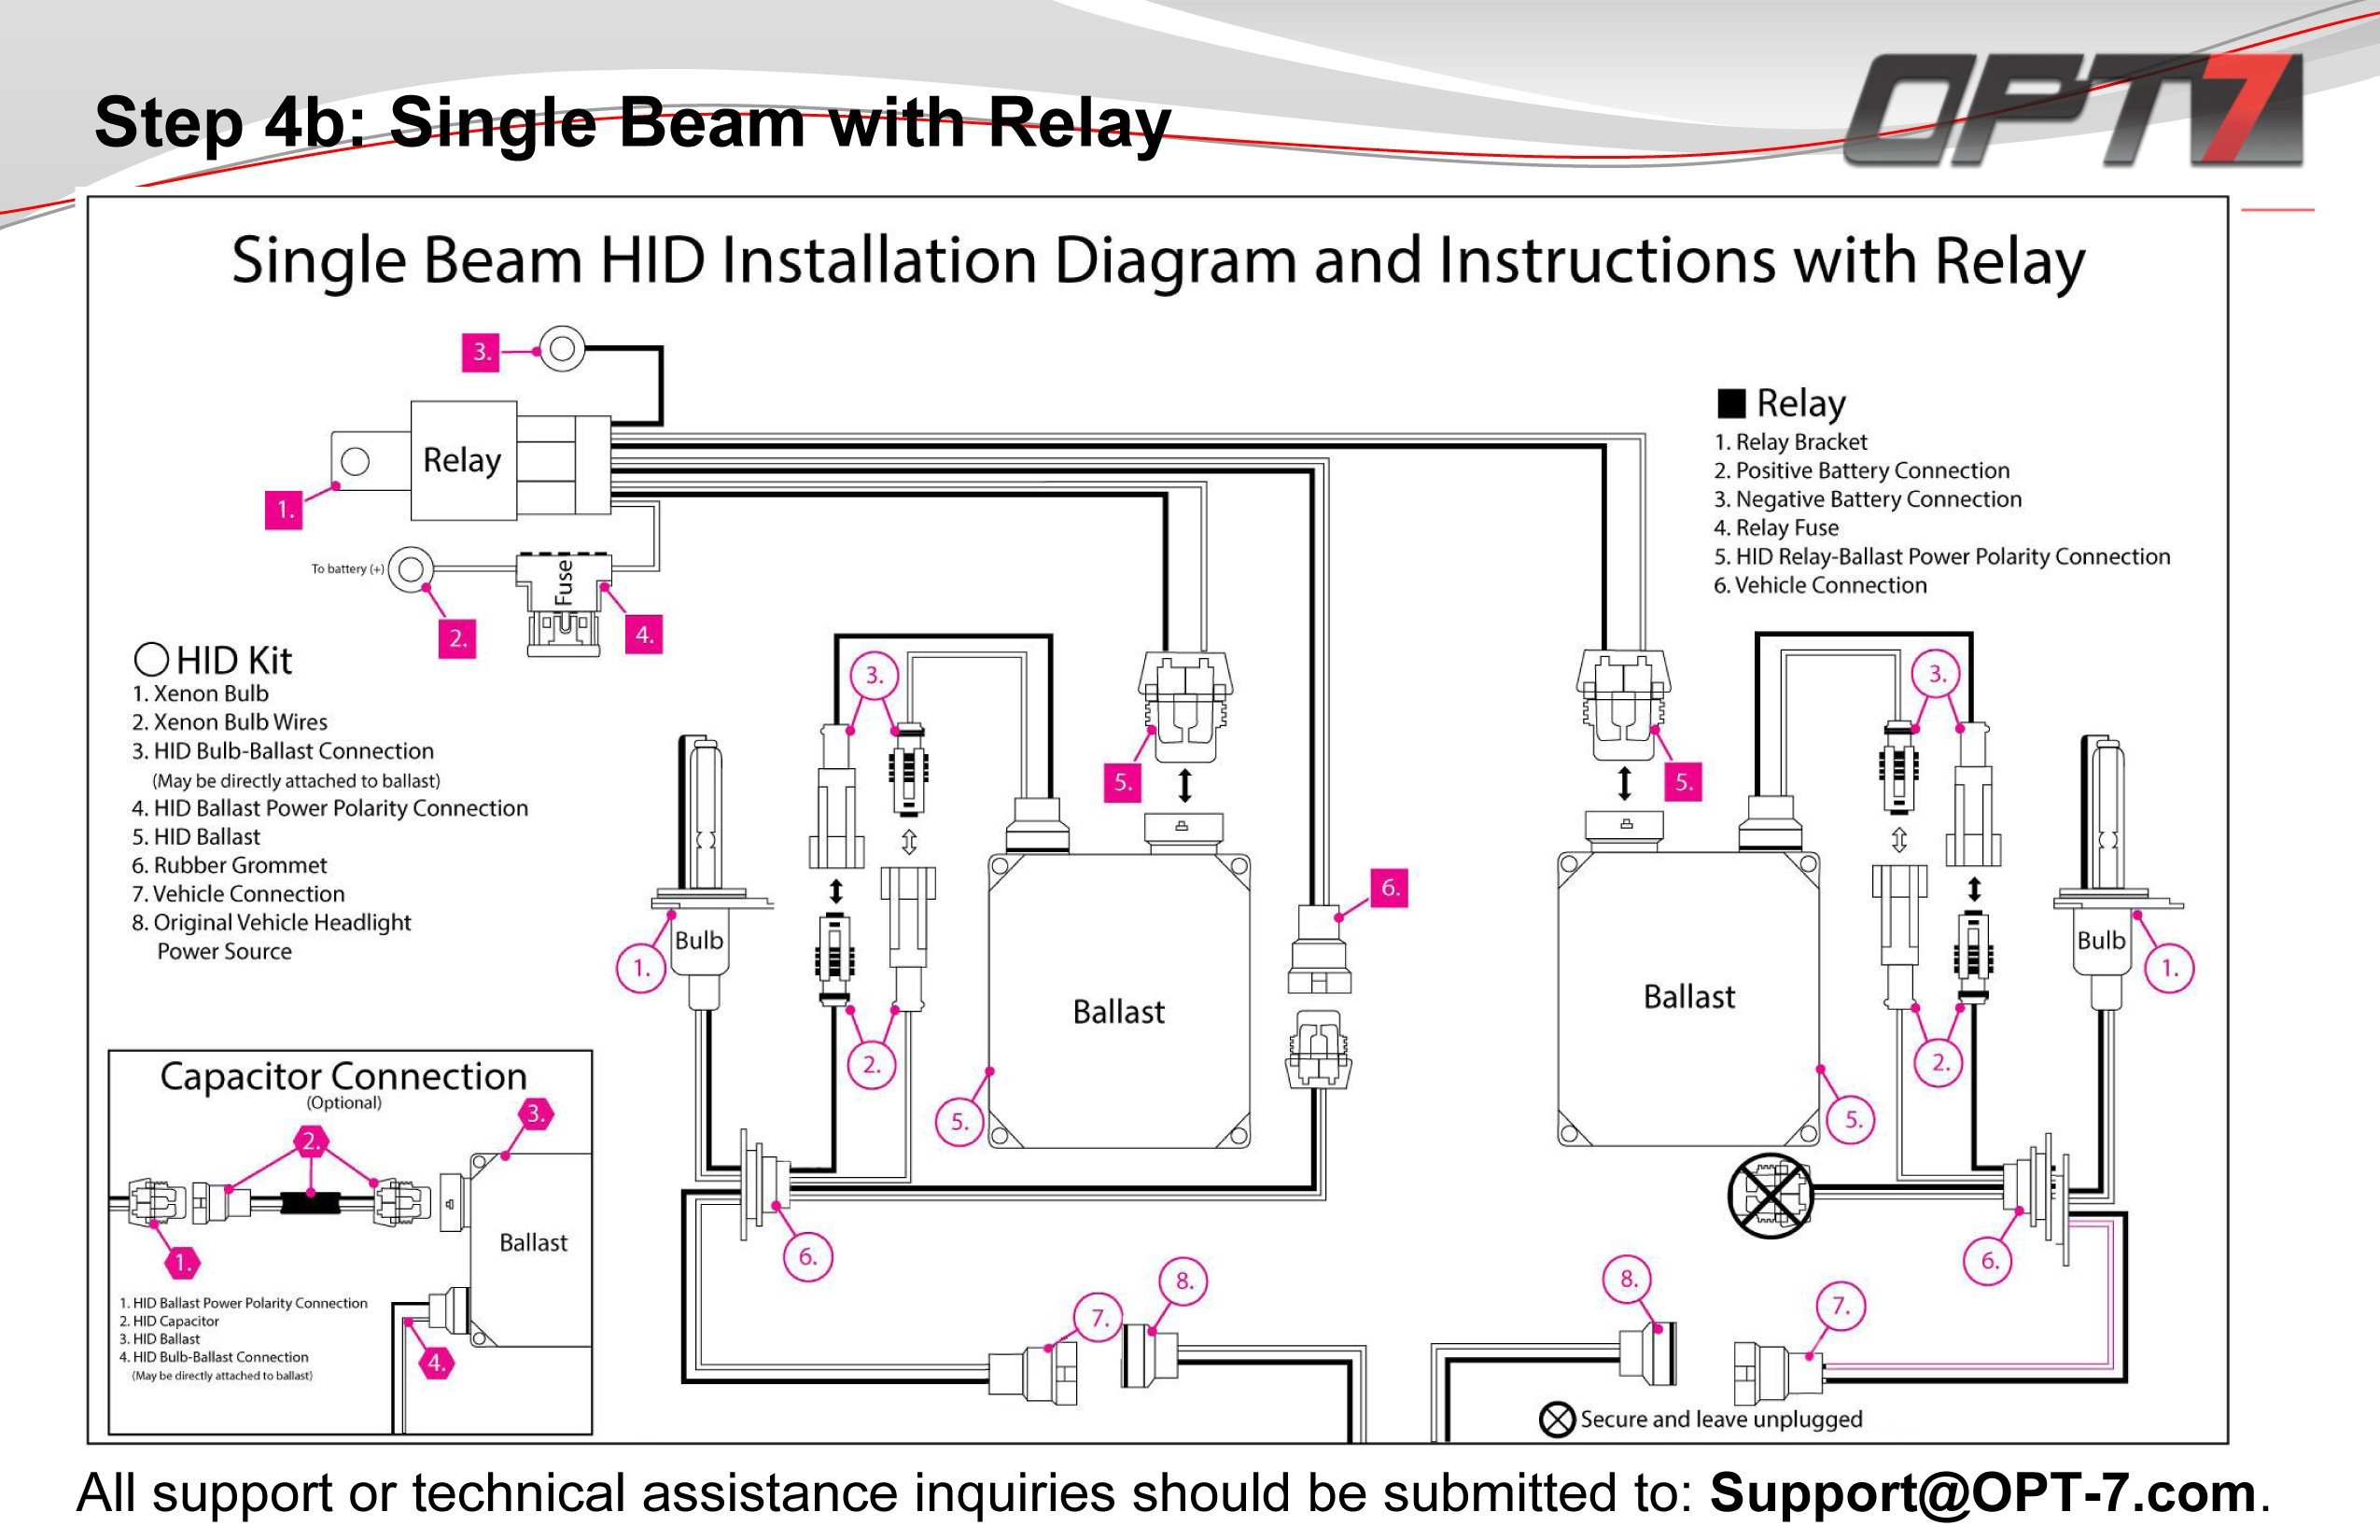 Echlin Voltage Regulator Wiring Diagram Wiring Diagram for Hid Relay Valid Hid Wiring Diagram without